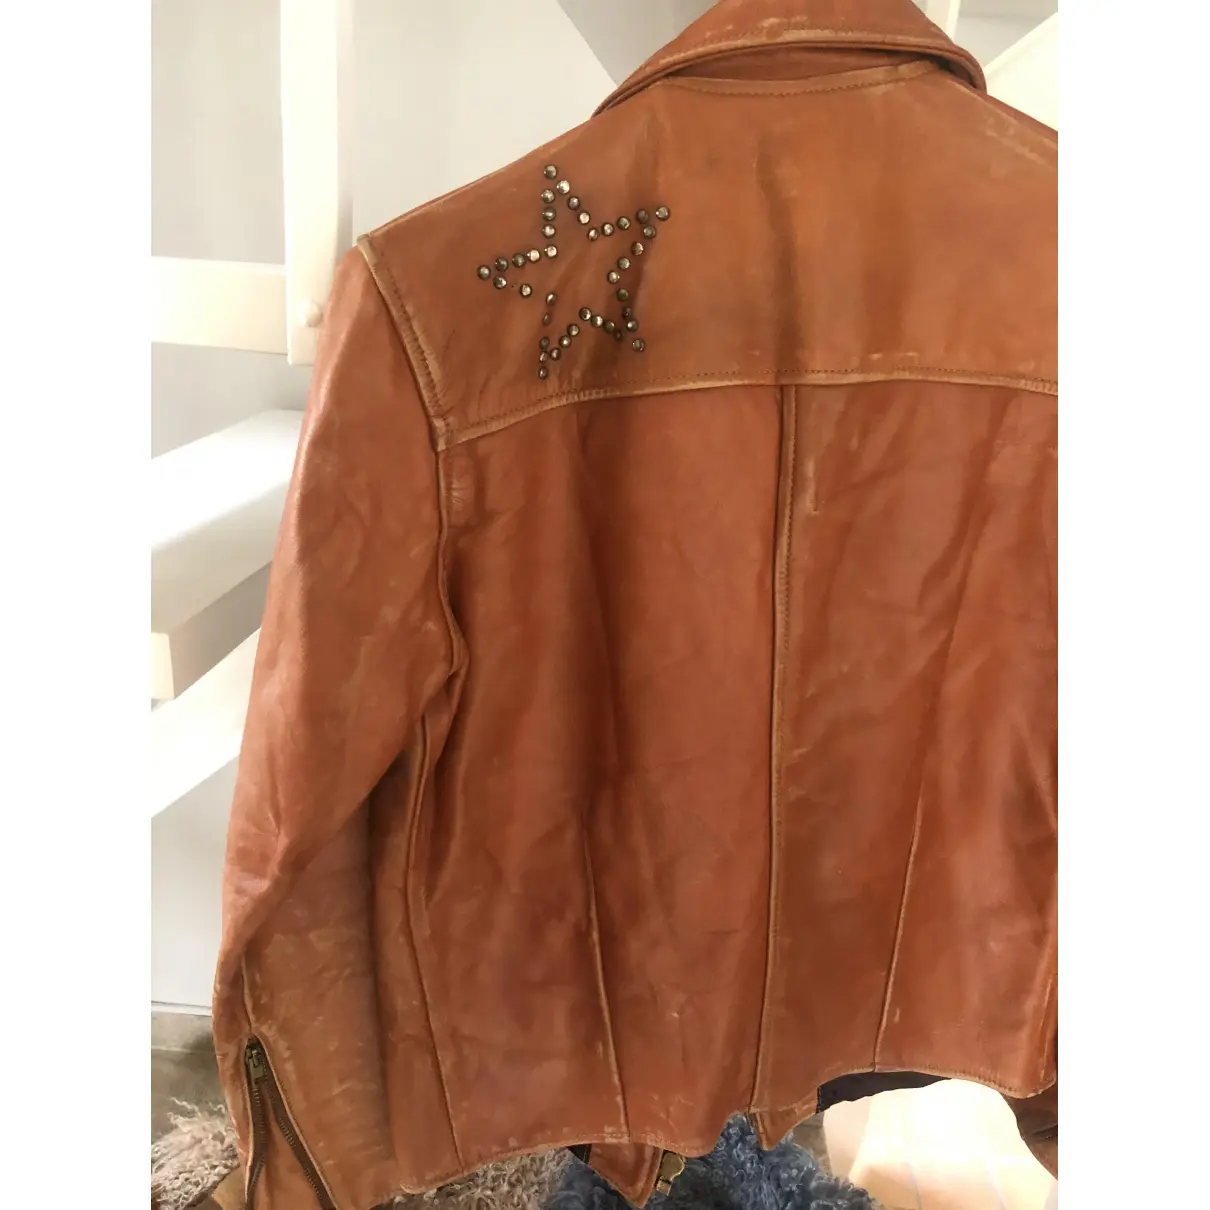 Buy Levi's Leather jacket online - Vintage